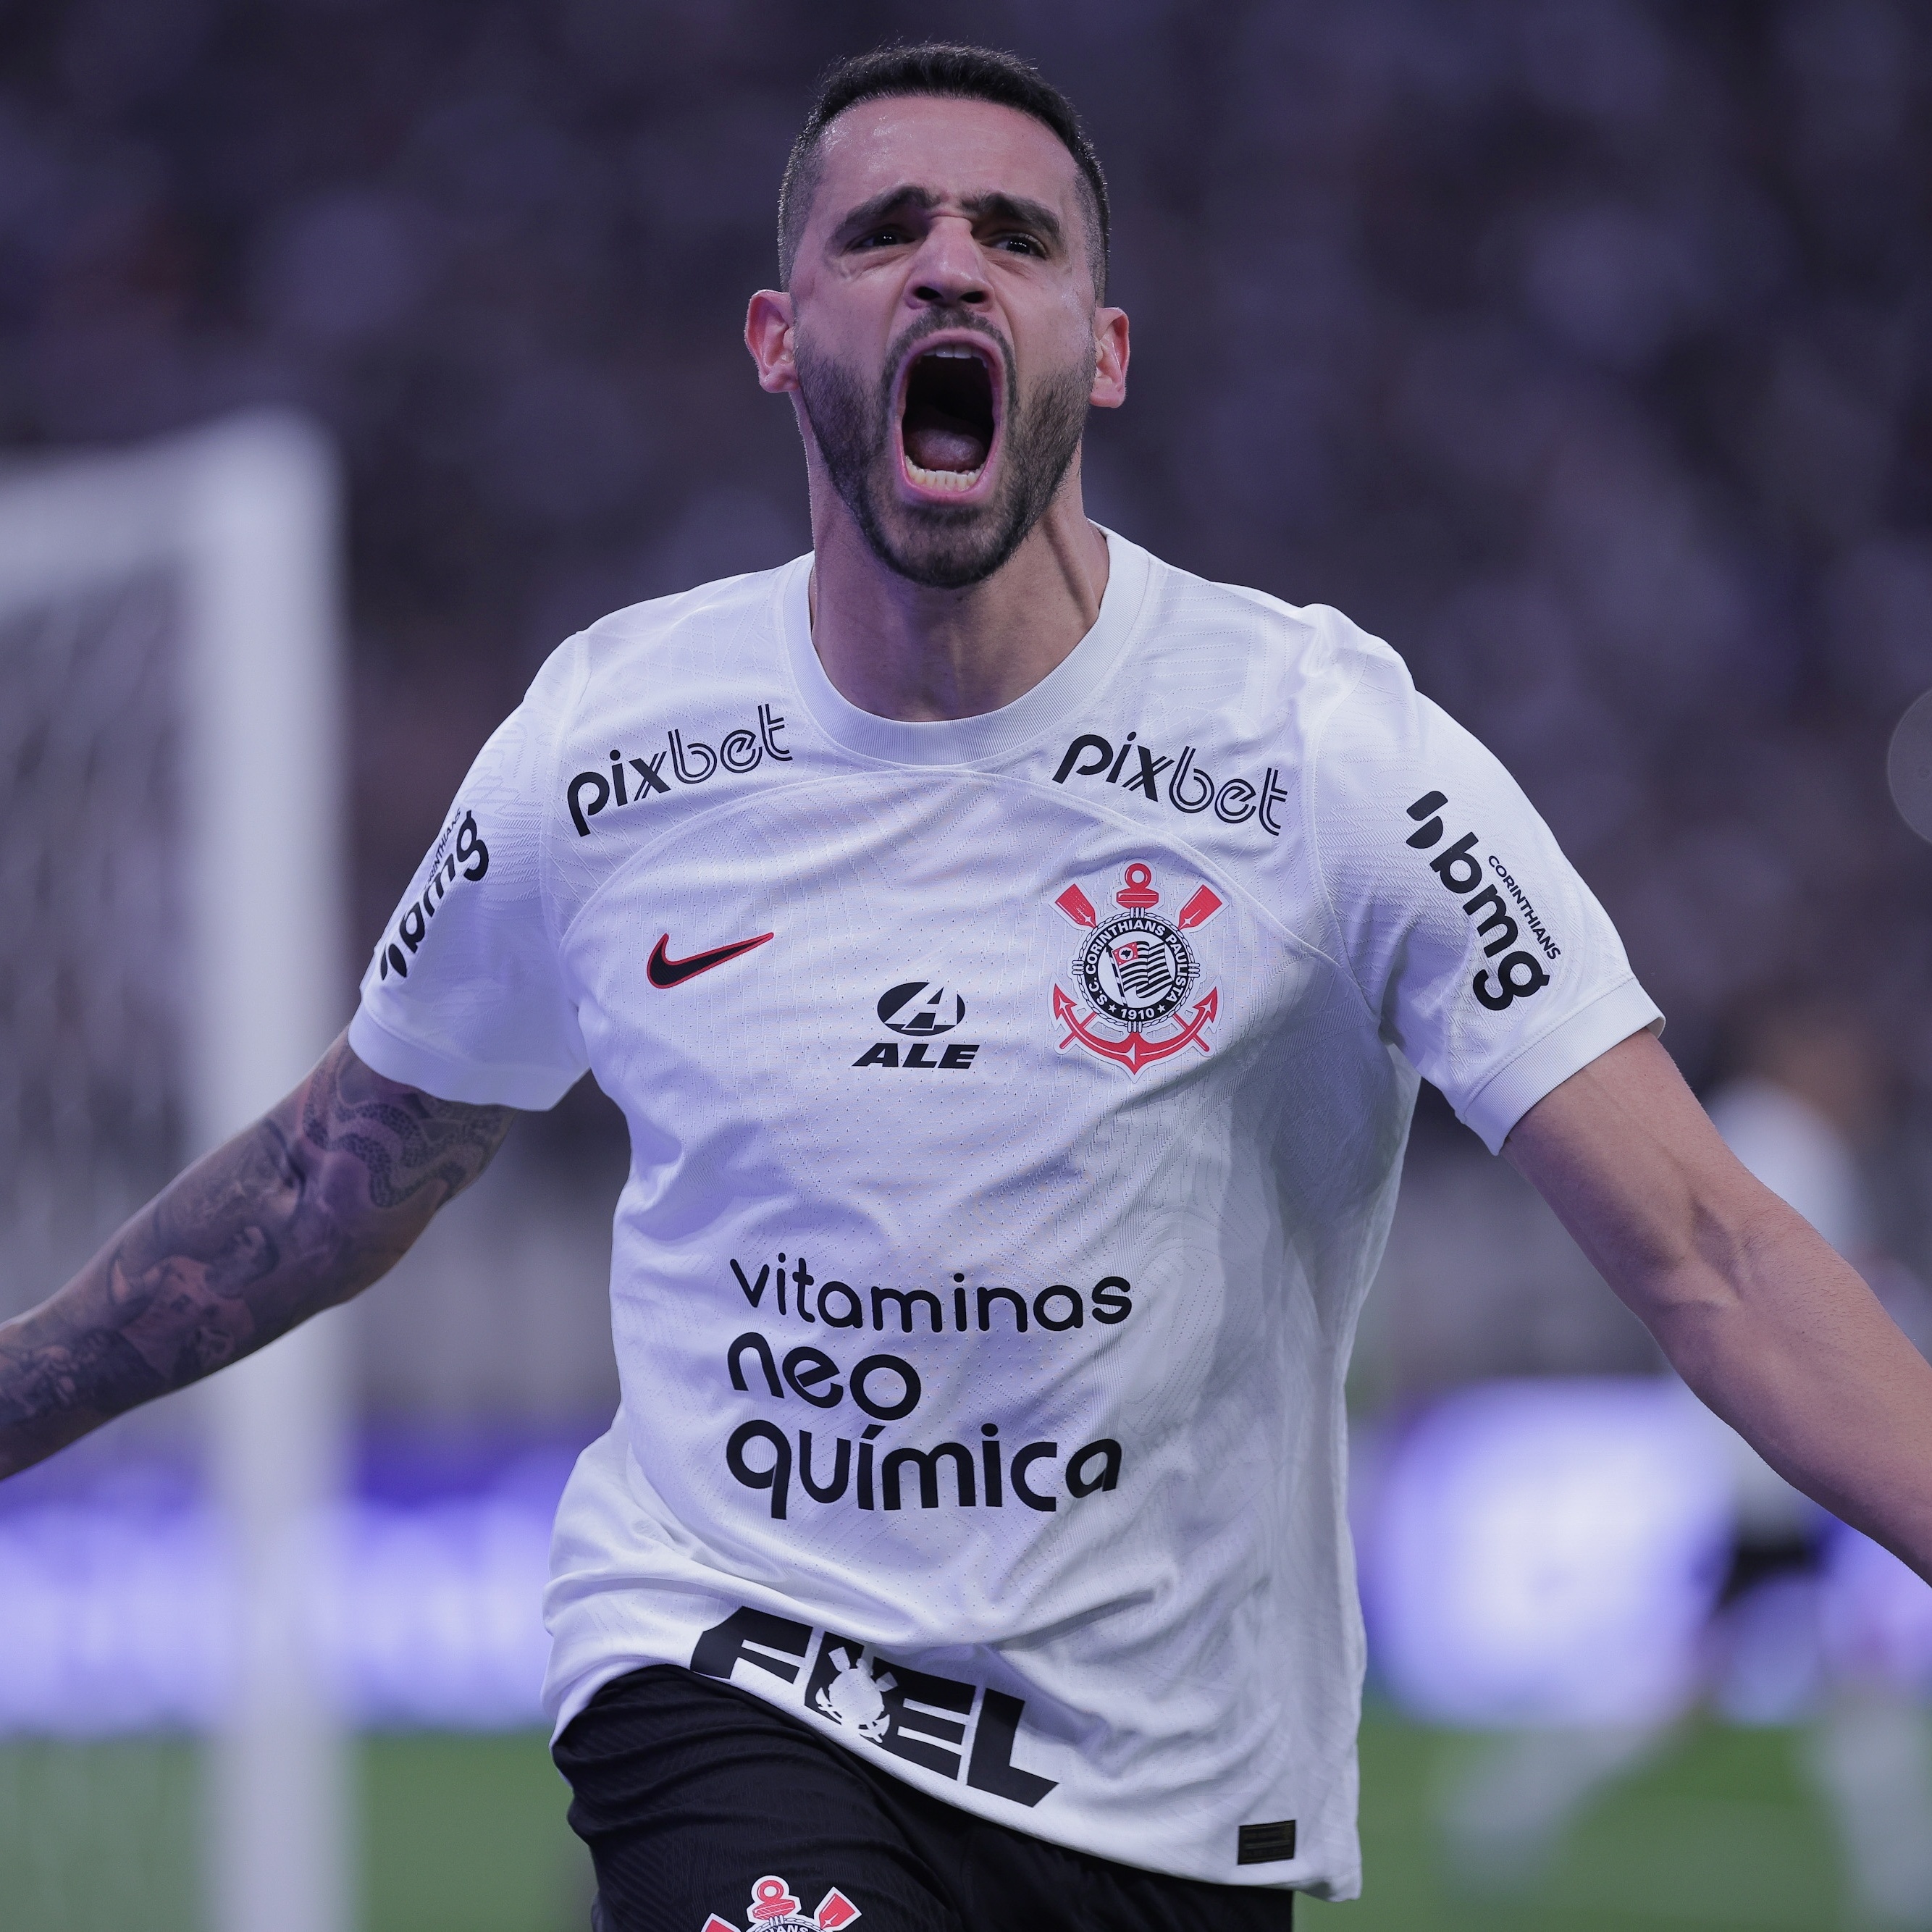 Melhor em campo, Renato Augusto elogia atuação do Corinthians